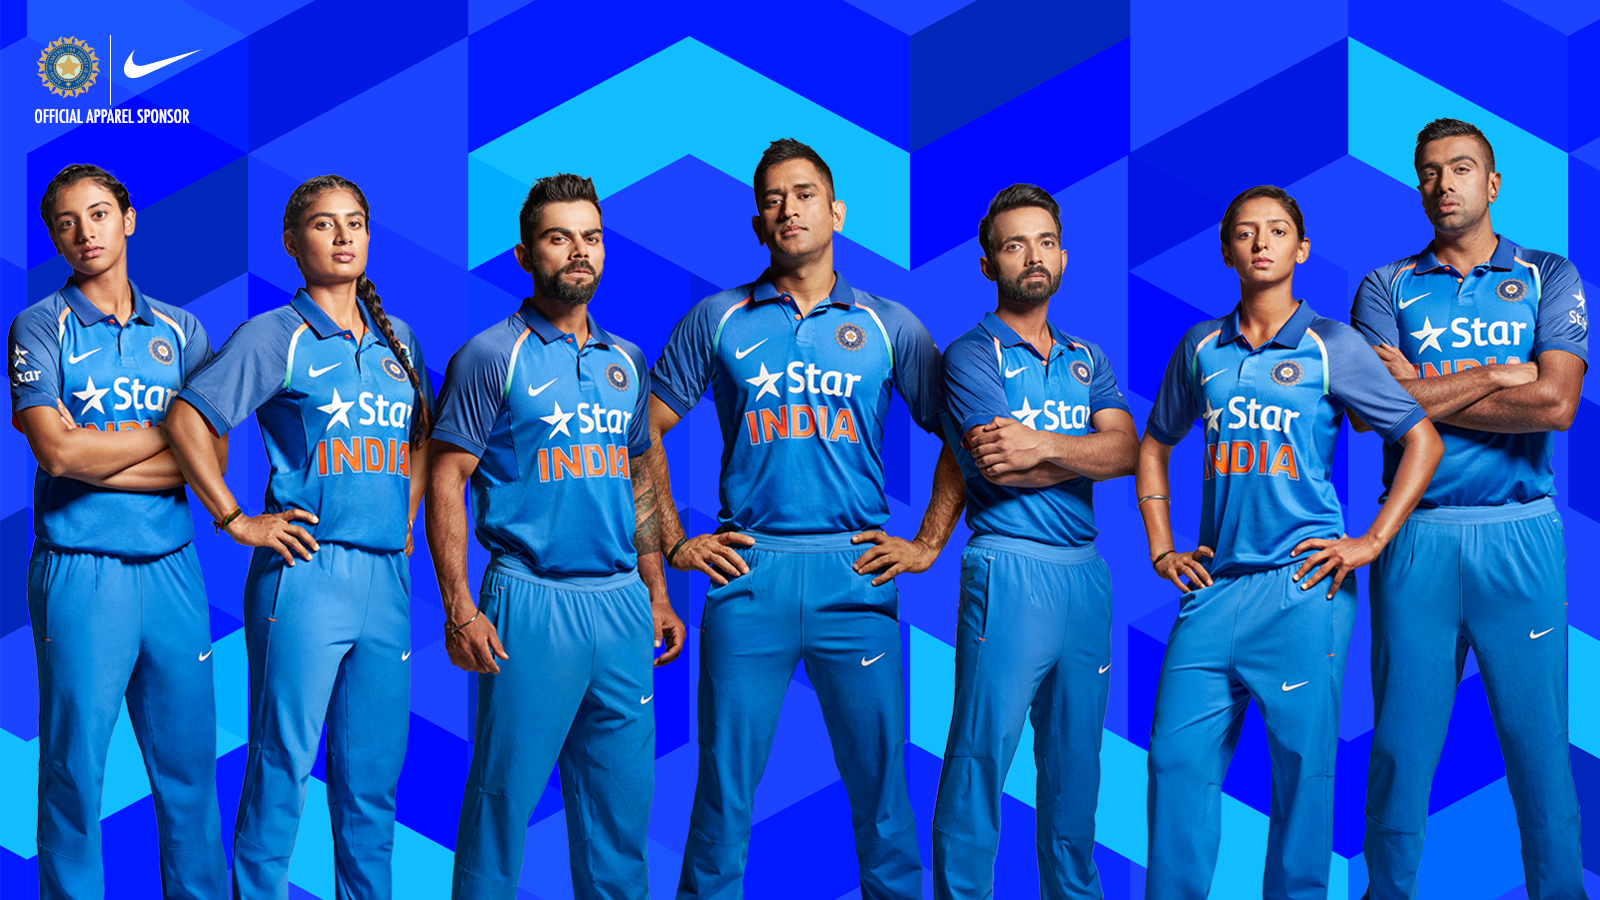 indien cricket wallpaper,mannschaft,elektrisches blau,jersey,sportbekleidung